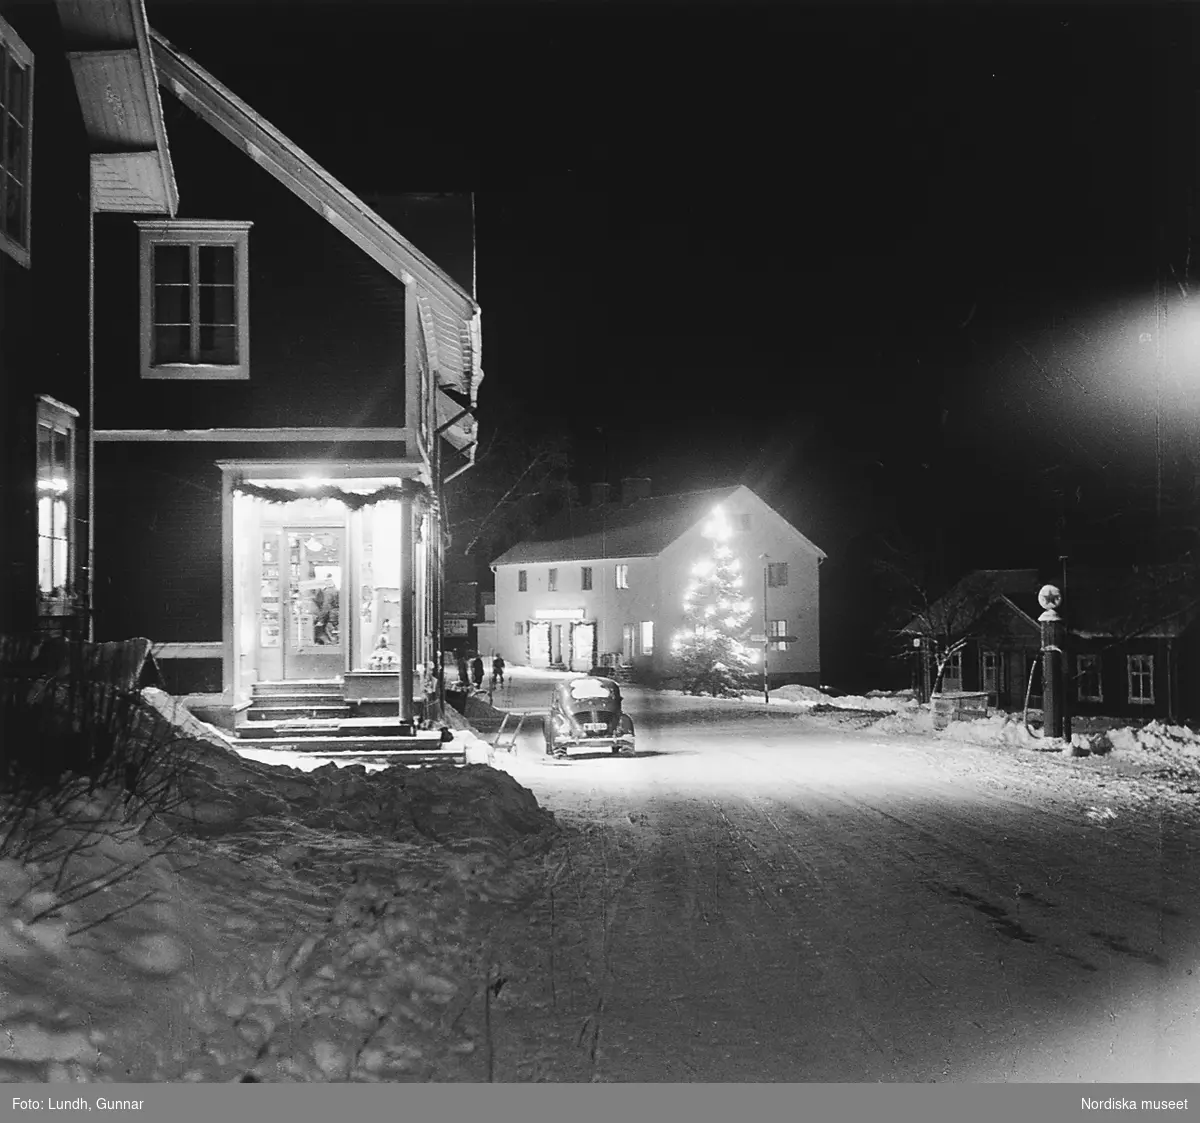 Nattbild på en snötäckt gata i Tällberg år 1950. En bil står parkerad utanför en affär. På andra sidan gatan en bensinpump. En stor julgran med belysning står vid gatan.